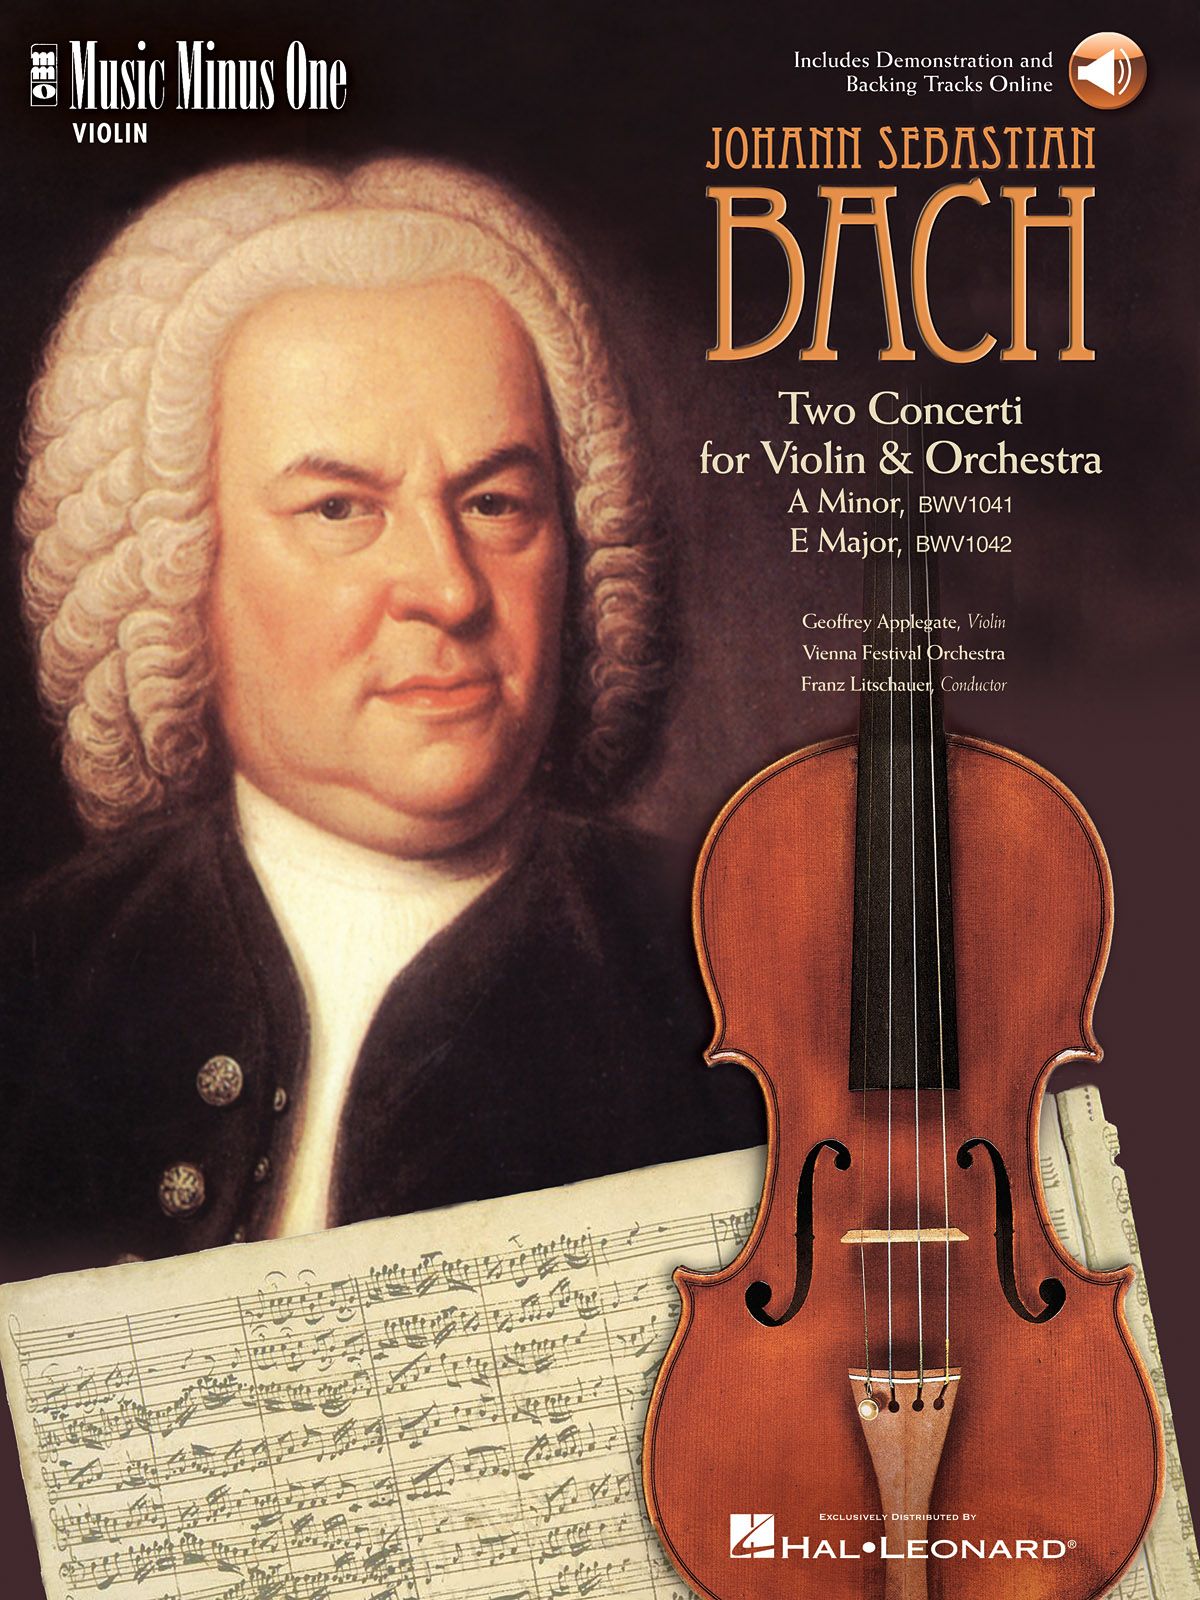 Bach violin. Иоганн Себастьян Бах. Иоганн Себастьян Бах со скрипкой. Иоганн Себастьян Бах с инструментом. 2. Johann Sebastian Bach.